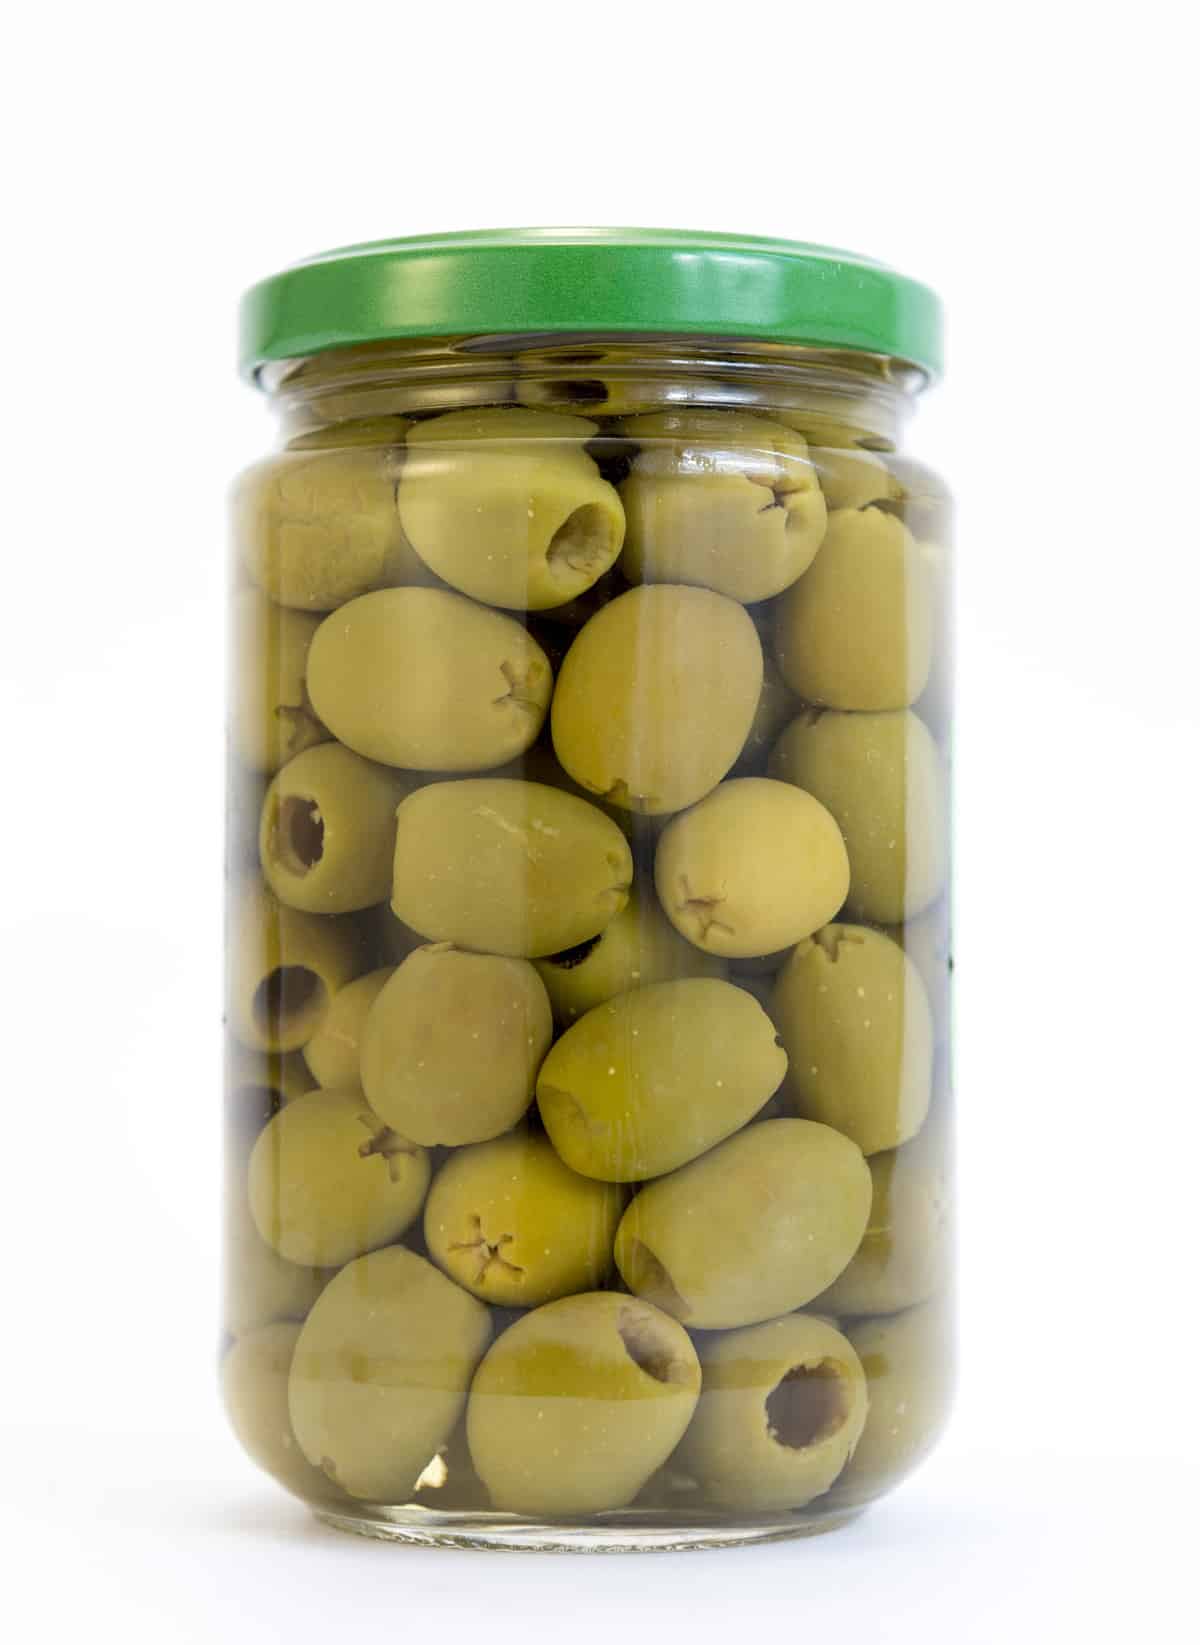 盛在罐子里的绿橄榄和白橄榄分开。